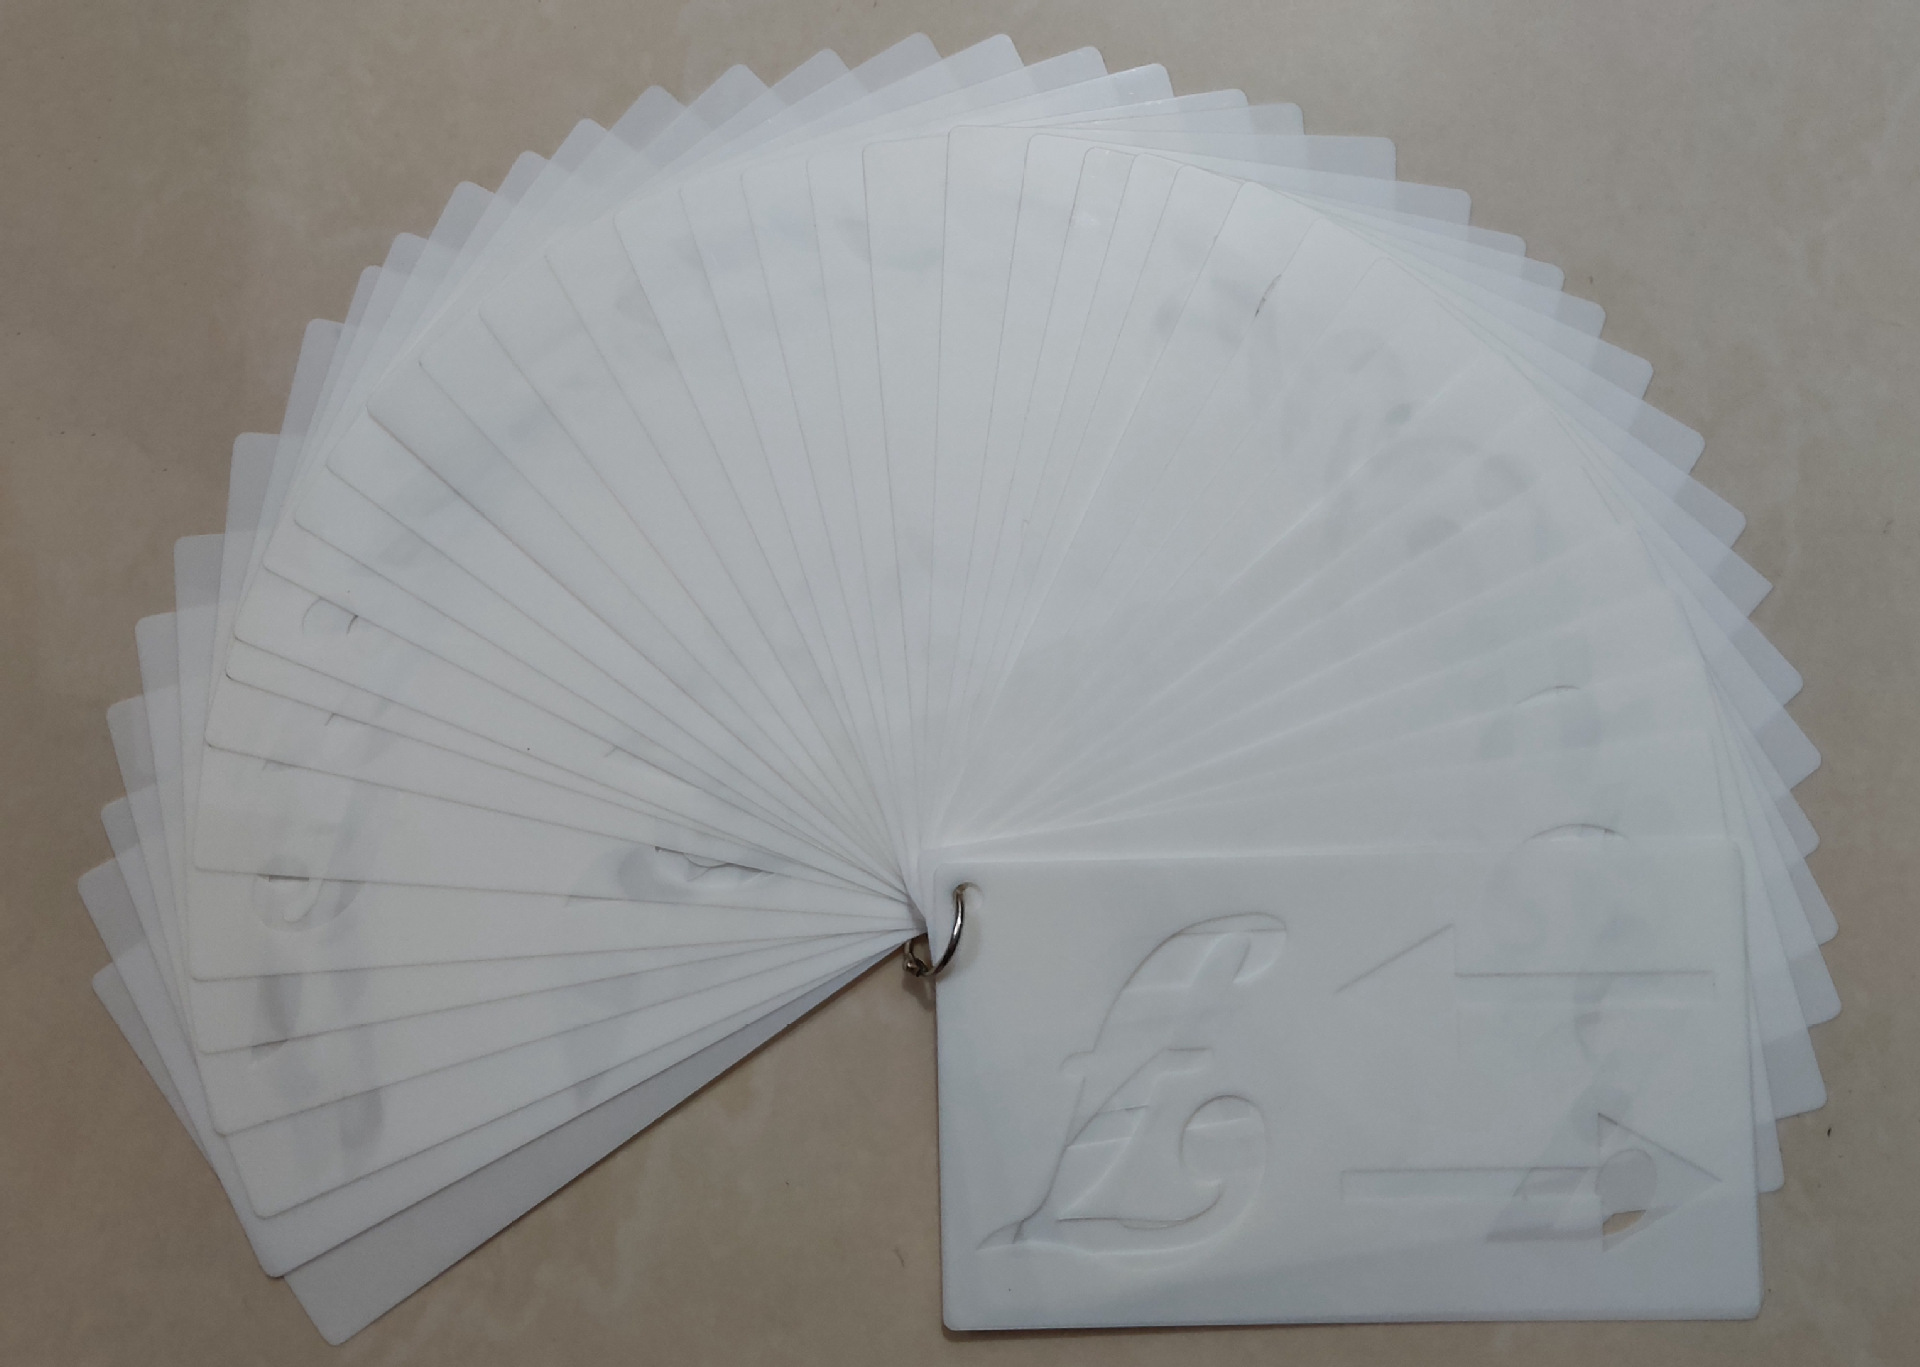 40 in 1 Kaart DIY Album Masking Spray Geschilderd Template Tekening Stencils Schilderen Scrapbooking Card Alfabet